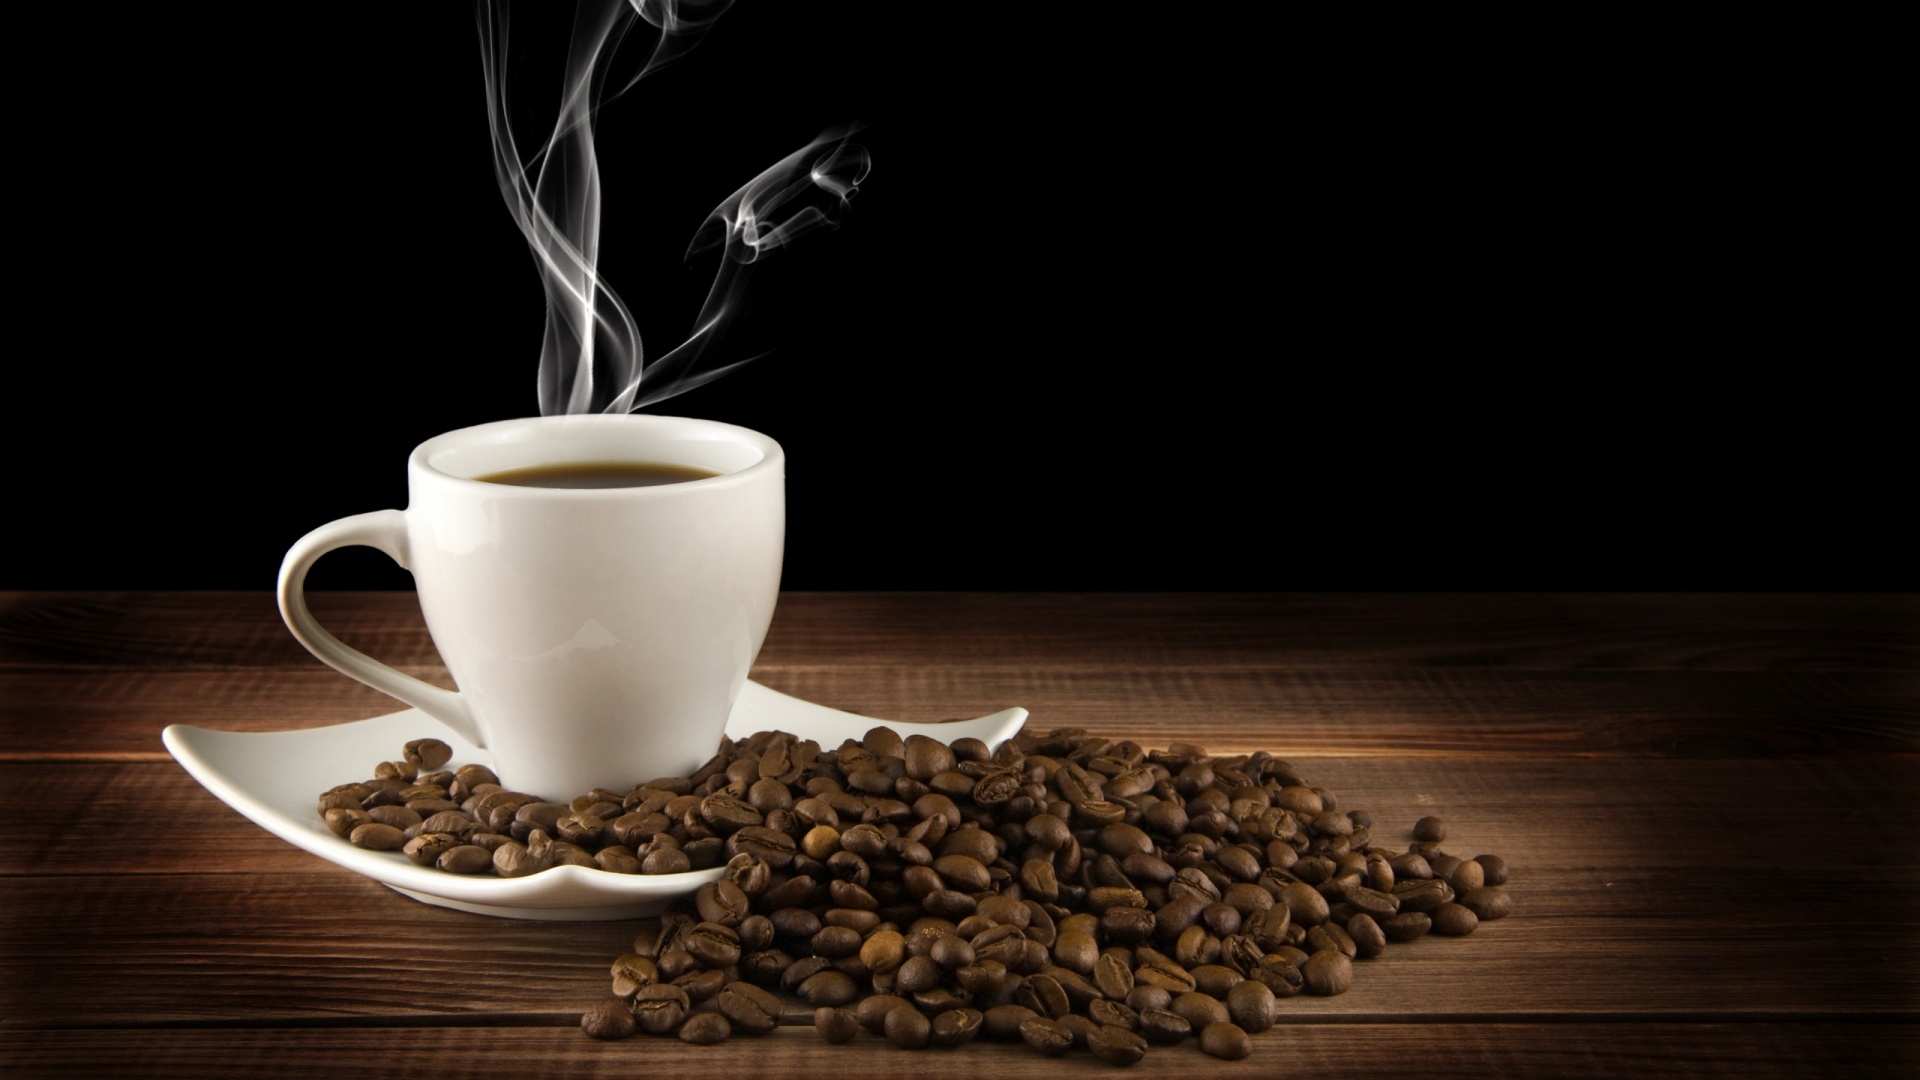 مدرن ترین تصویر از فنجان قهوه با بک گراند تیره 